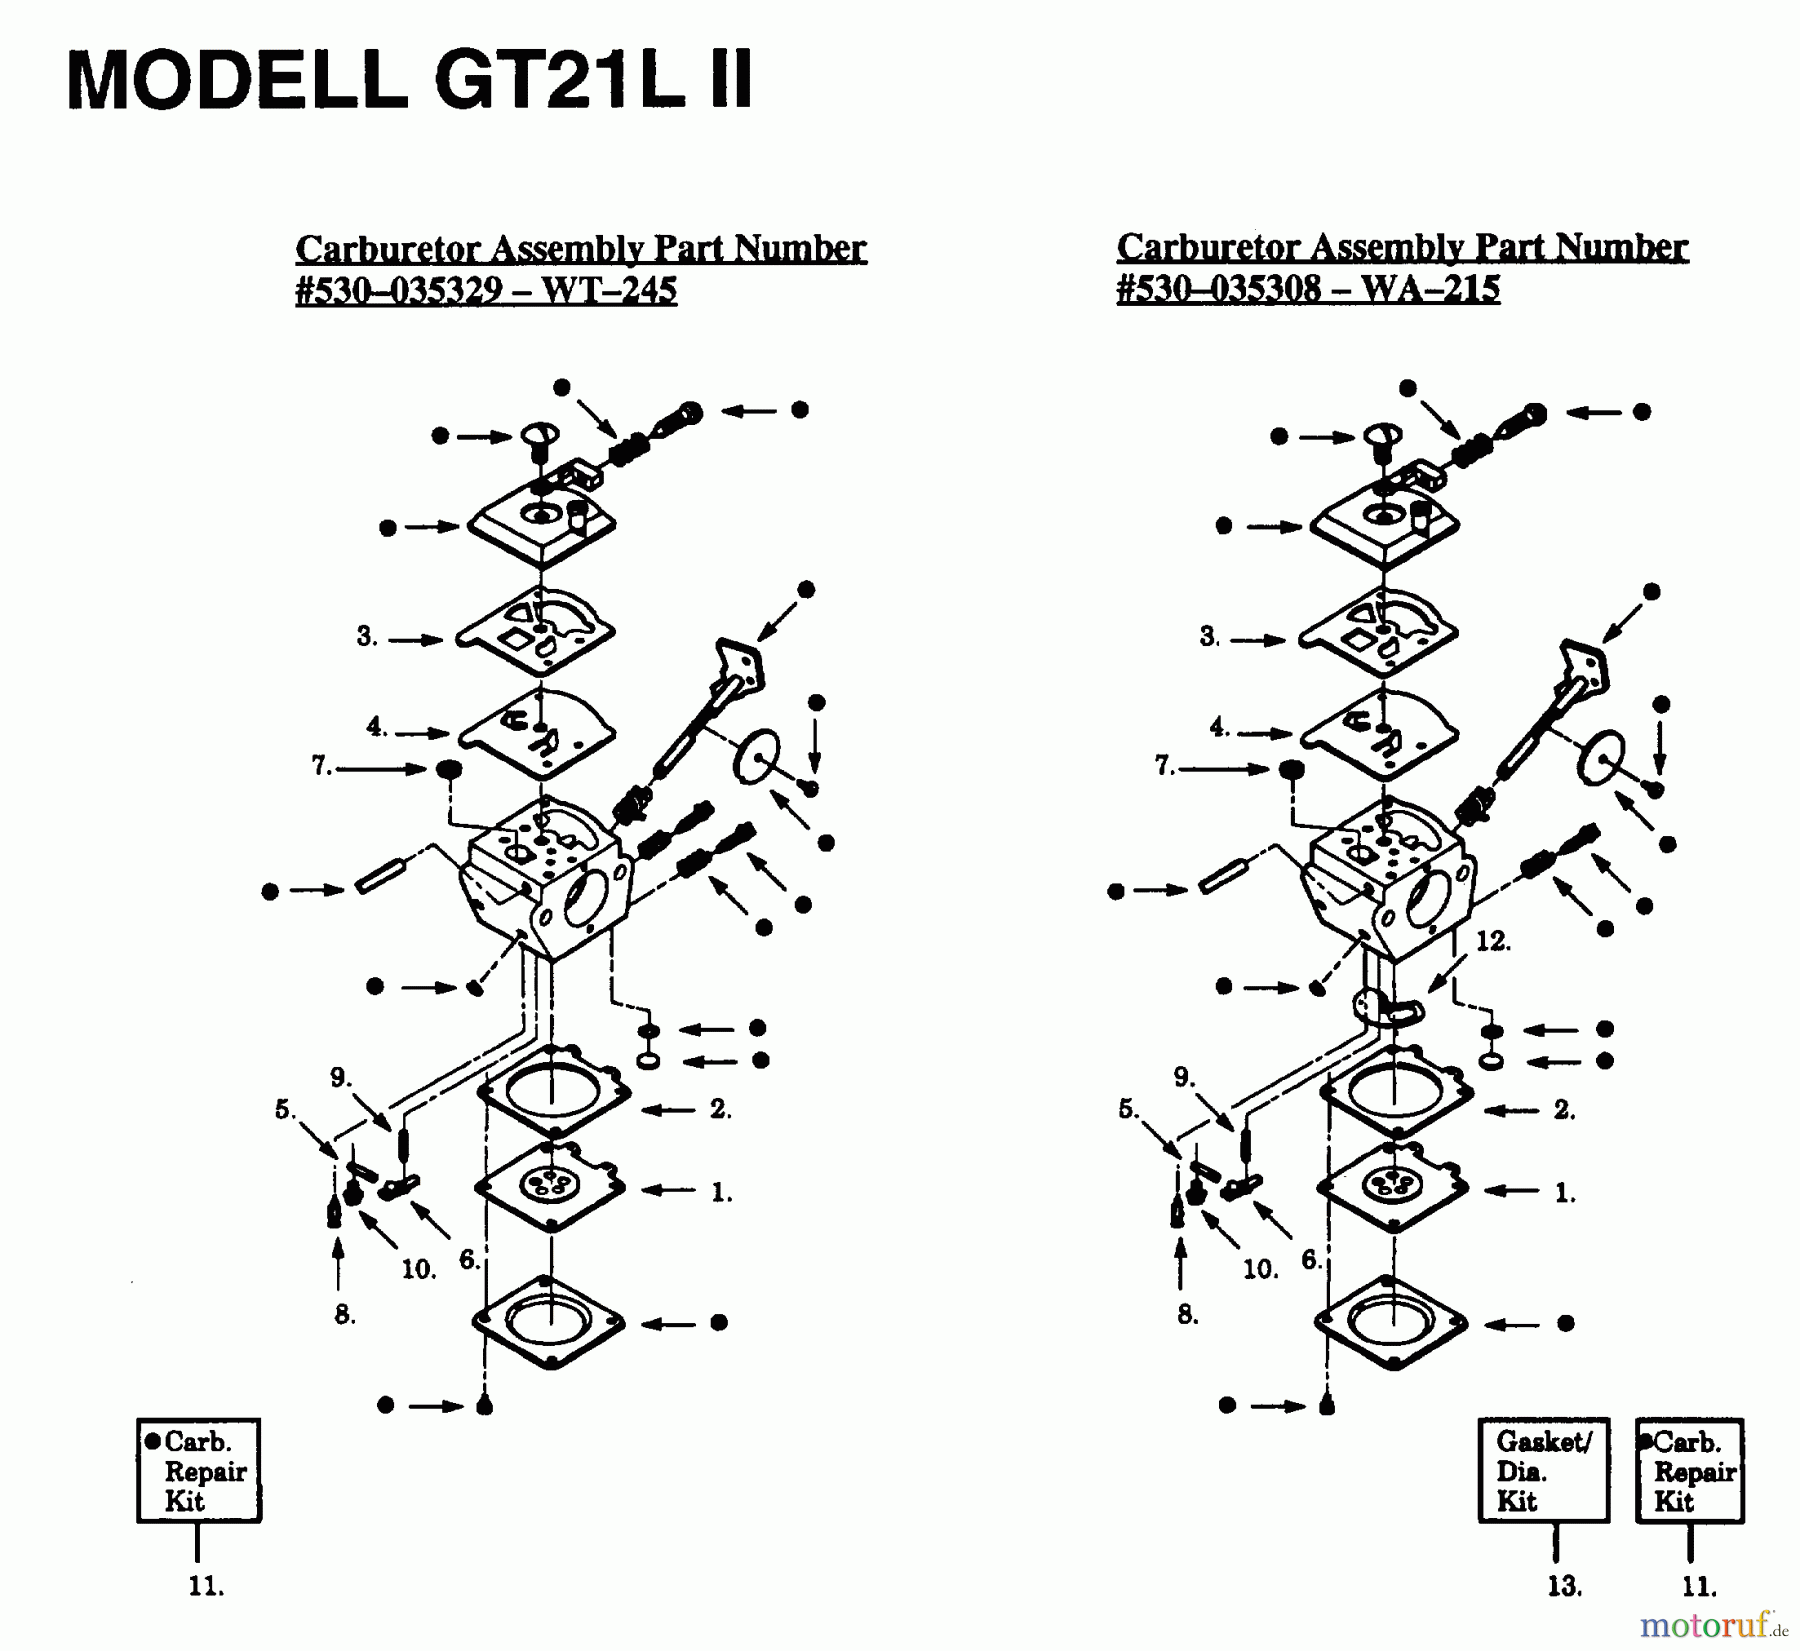  Jonsered Motorsensen, Trimmer GT21L - Jonsered String/Brush Trimmer (1993-01) CARBURETOR DETAILS